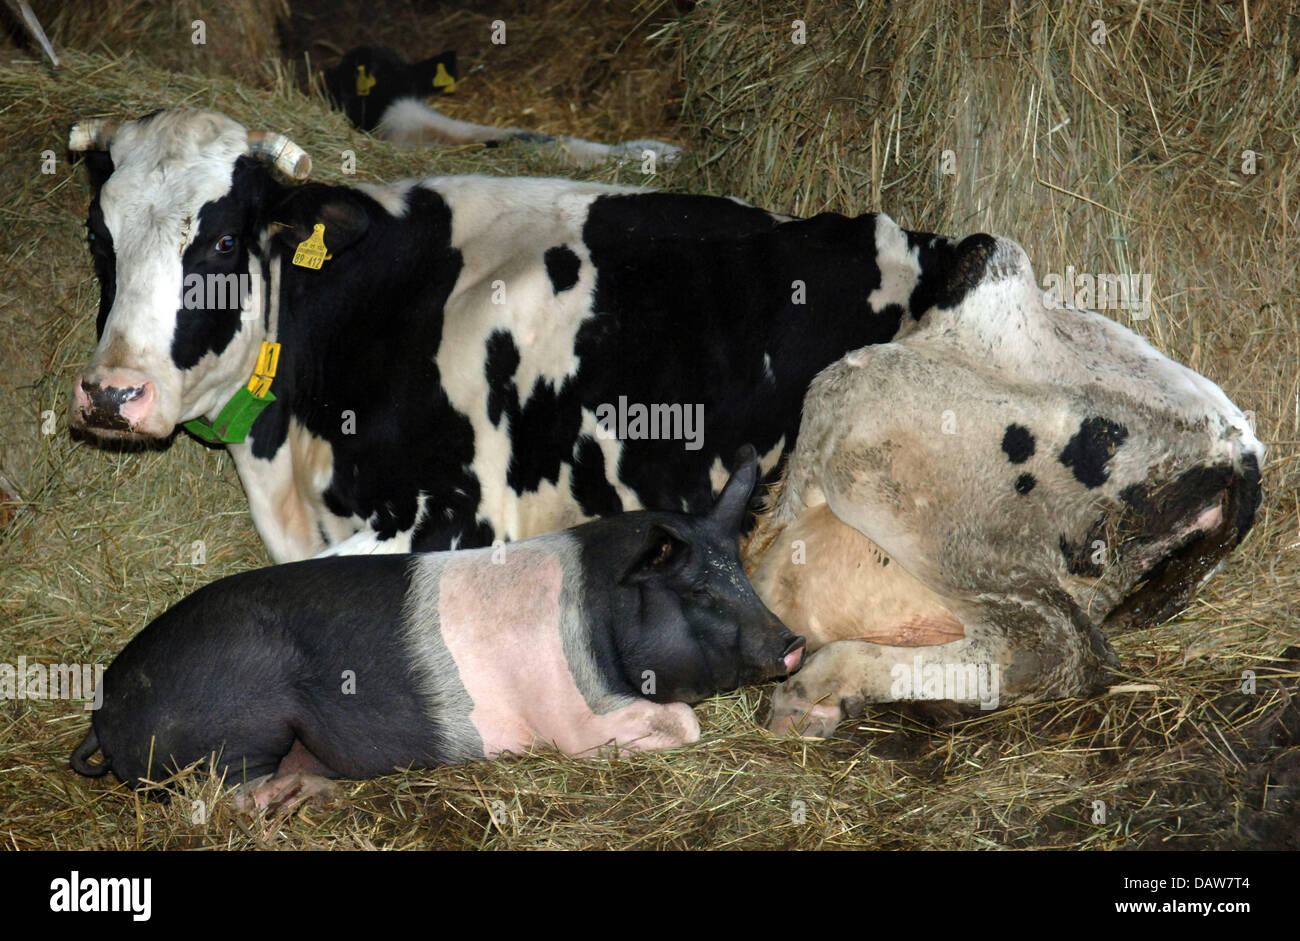 Die fünf Monate alte Schwein "Rudi" liegt direkt neben der Kuh "Eddi" an ihre Koester Bauernhof des Besitzers in Linden, Deutschland, Mittwoch, 7. März 2007. Rudi und die Kuh haben eine außergewöhnliche Freundschaft gemacht. Eddi säugt "Rudi" sogar mehrmals am Tag. Foto: Wulf Pfeiffer Stockfoto